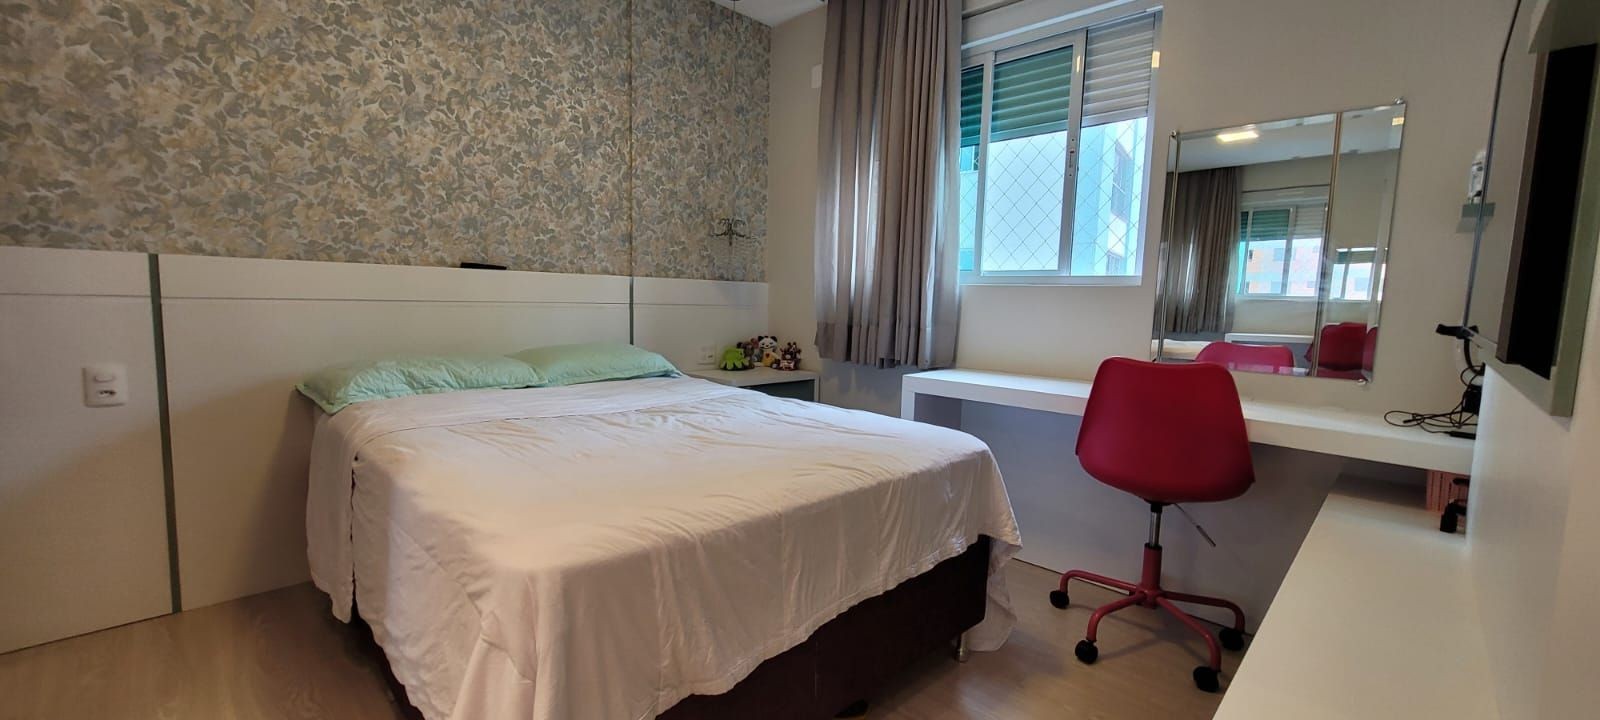 Apartamento Mobiliado, equipado e decorado com 03 suítes, Localizado na Barra Sul em Balneário Camboriú - SC